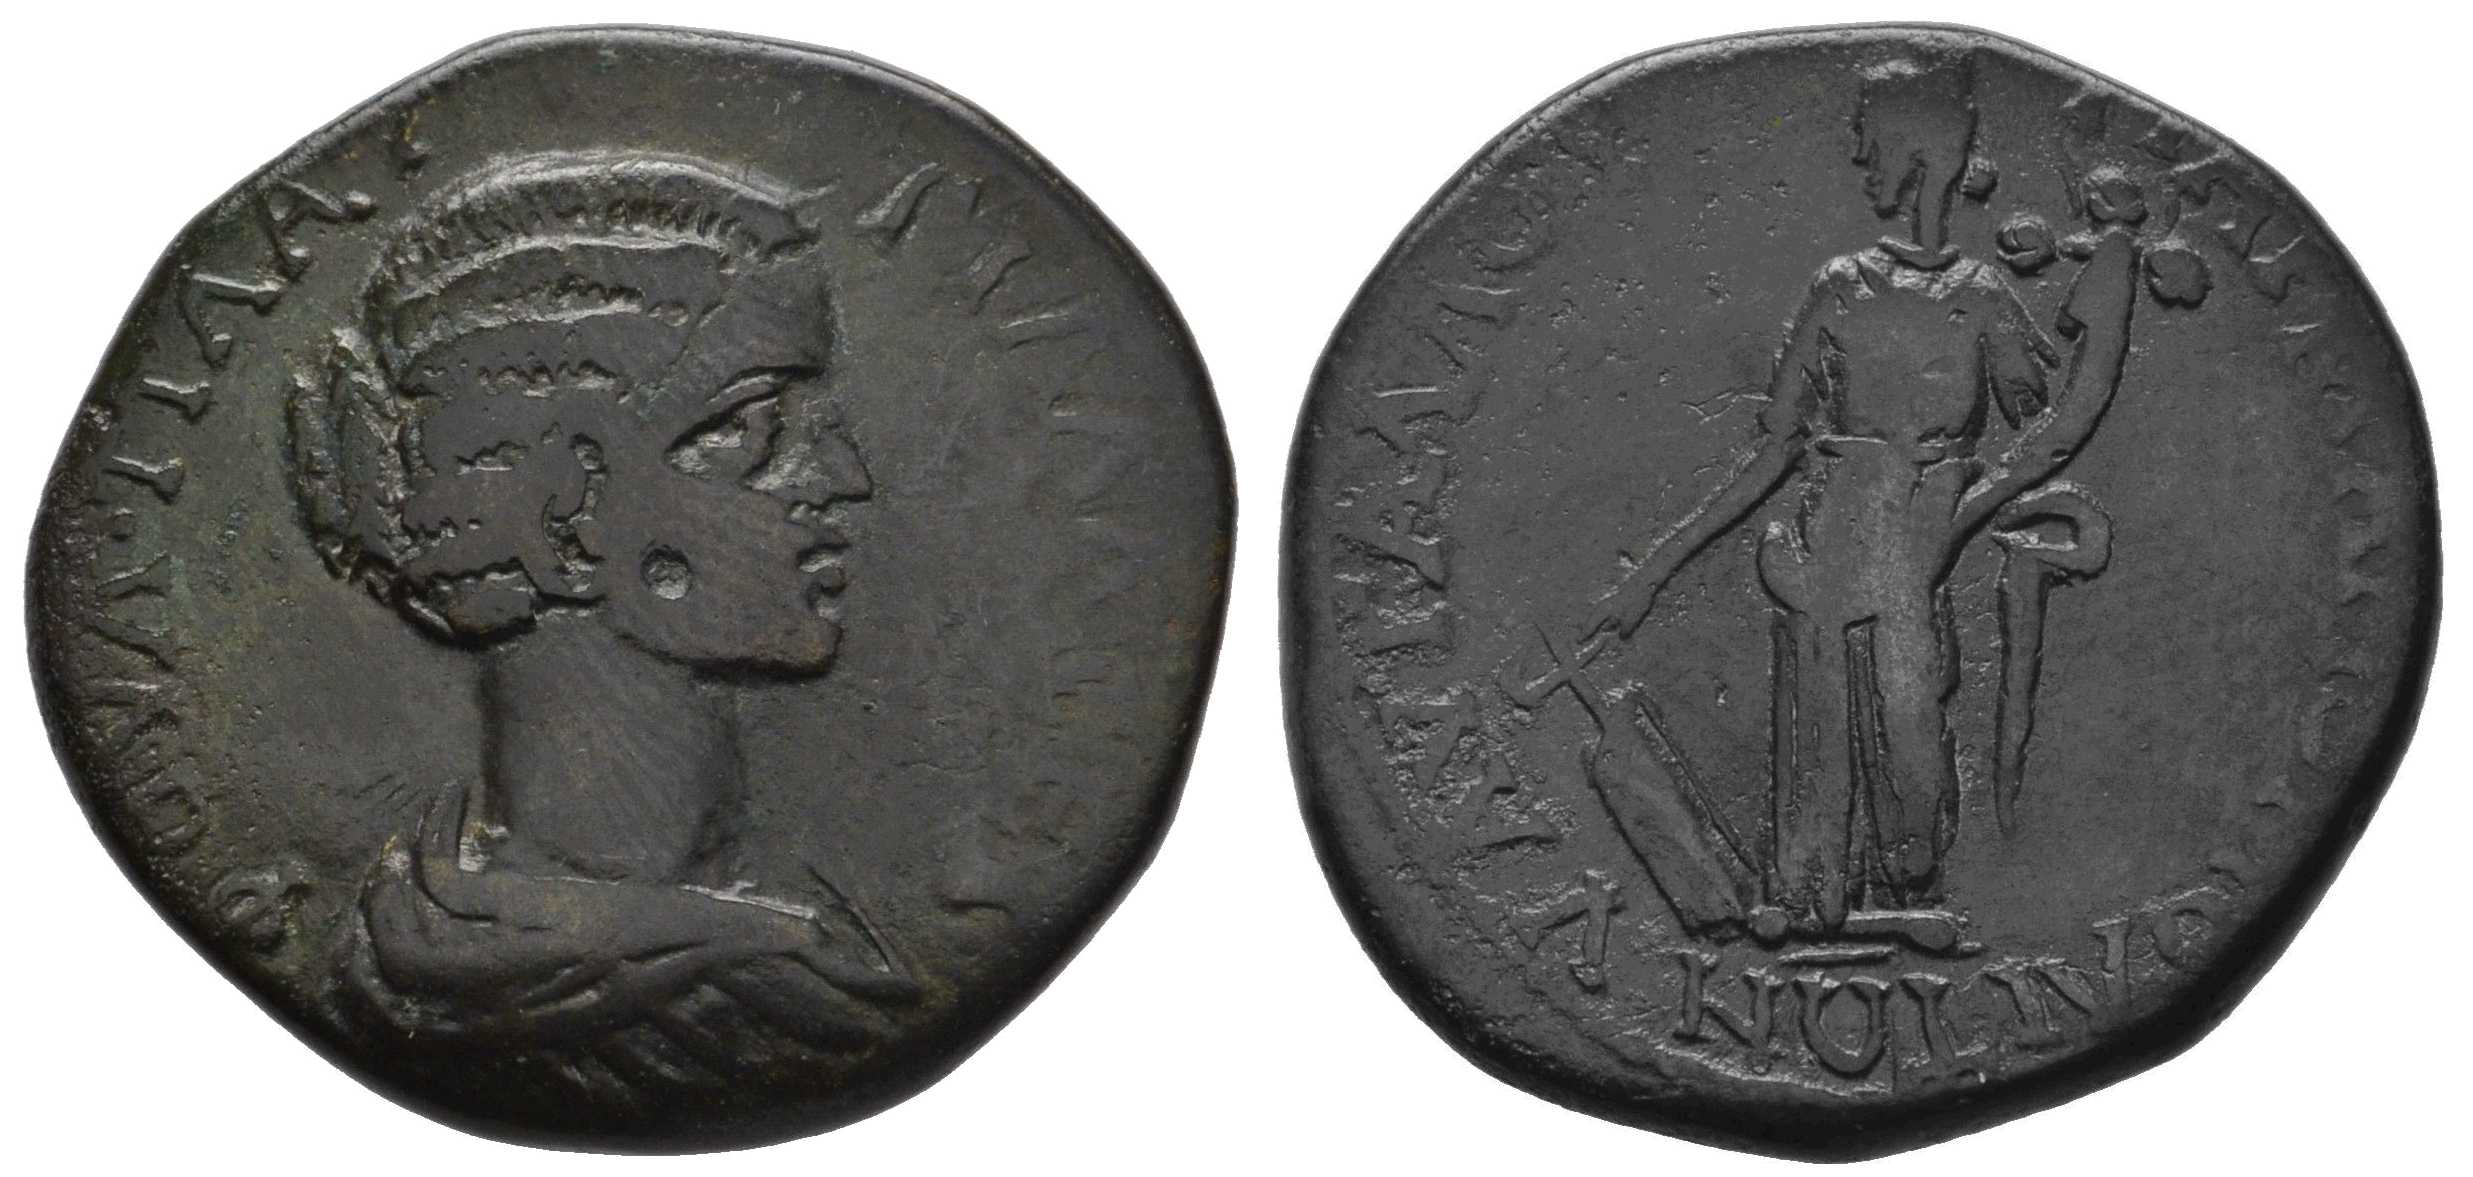 5907 Marcianopolis Moesia Inferior Plautilla AE